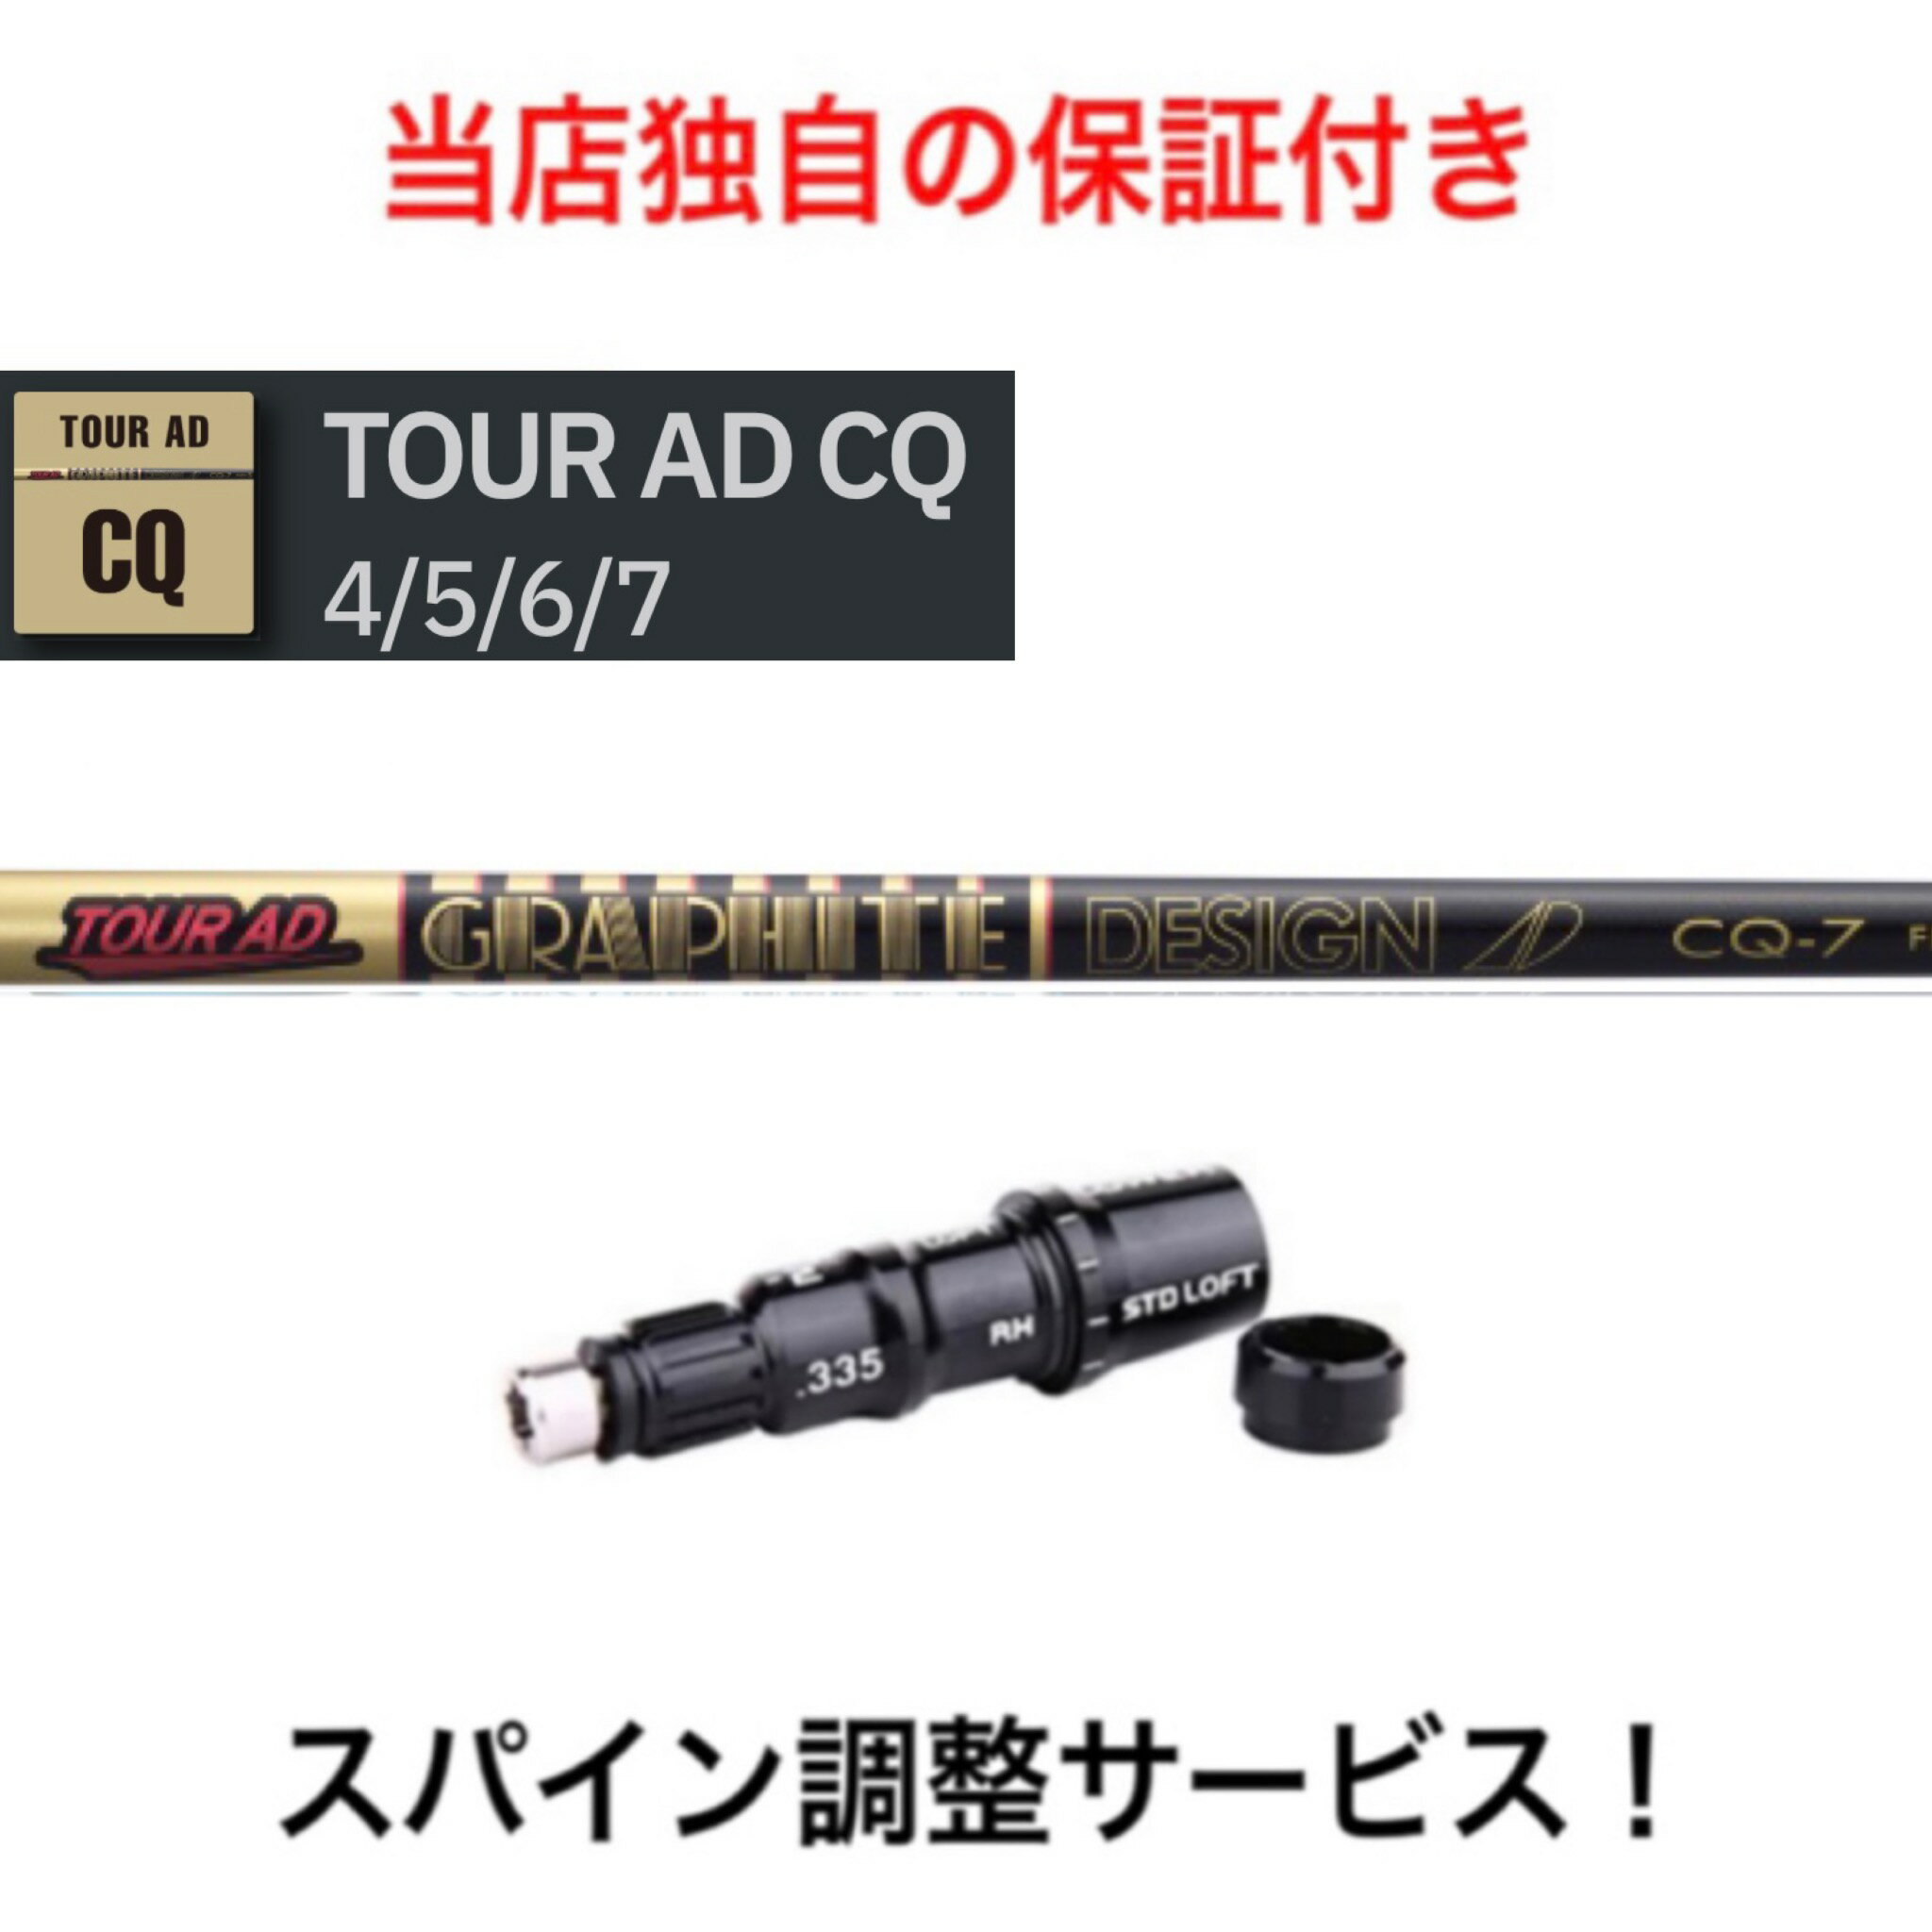 TM 【スパイン調整無料】 Tour AD CQ テ